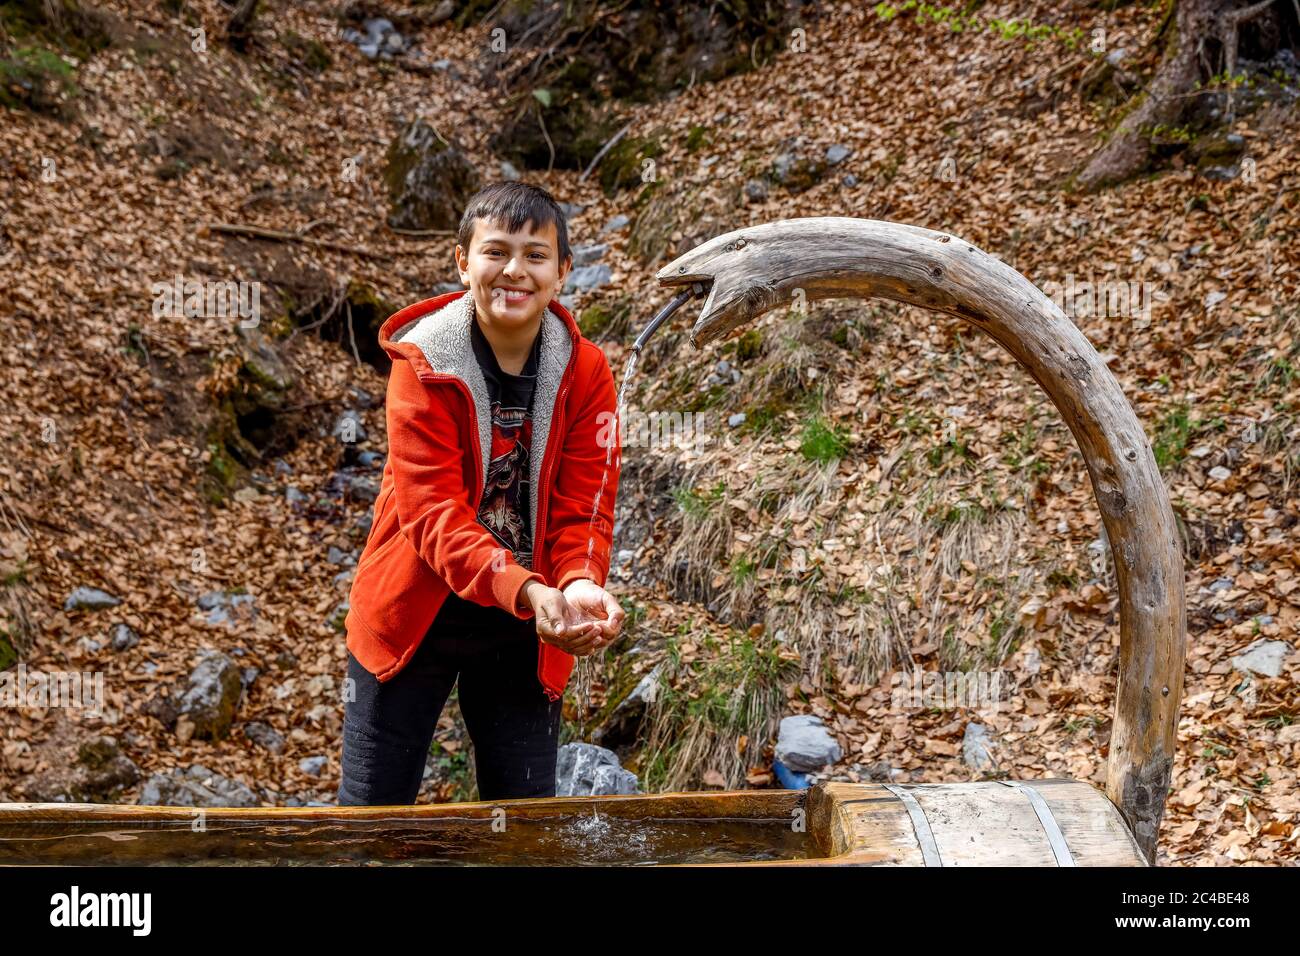 13-jähriger Junge, der in Haute savoie, frankreich, frisches Wasser bekommt Stockfoto